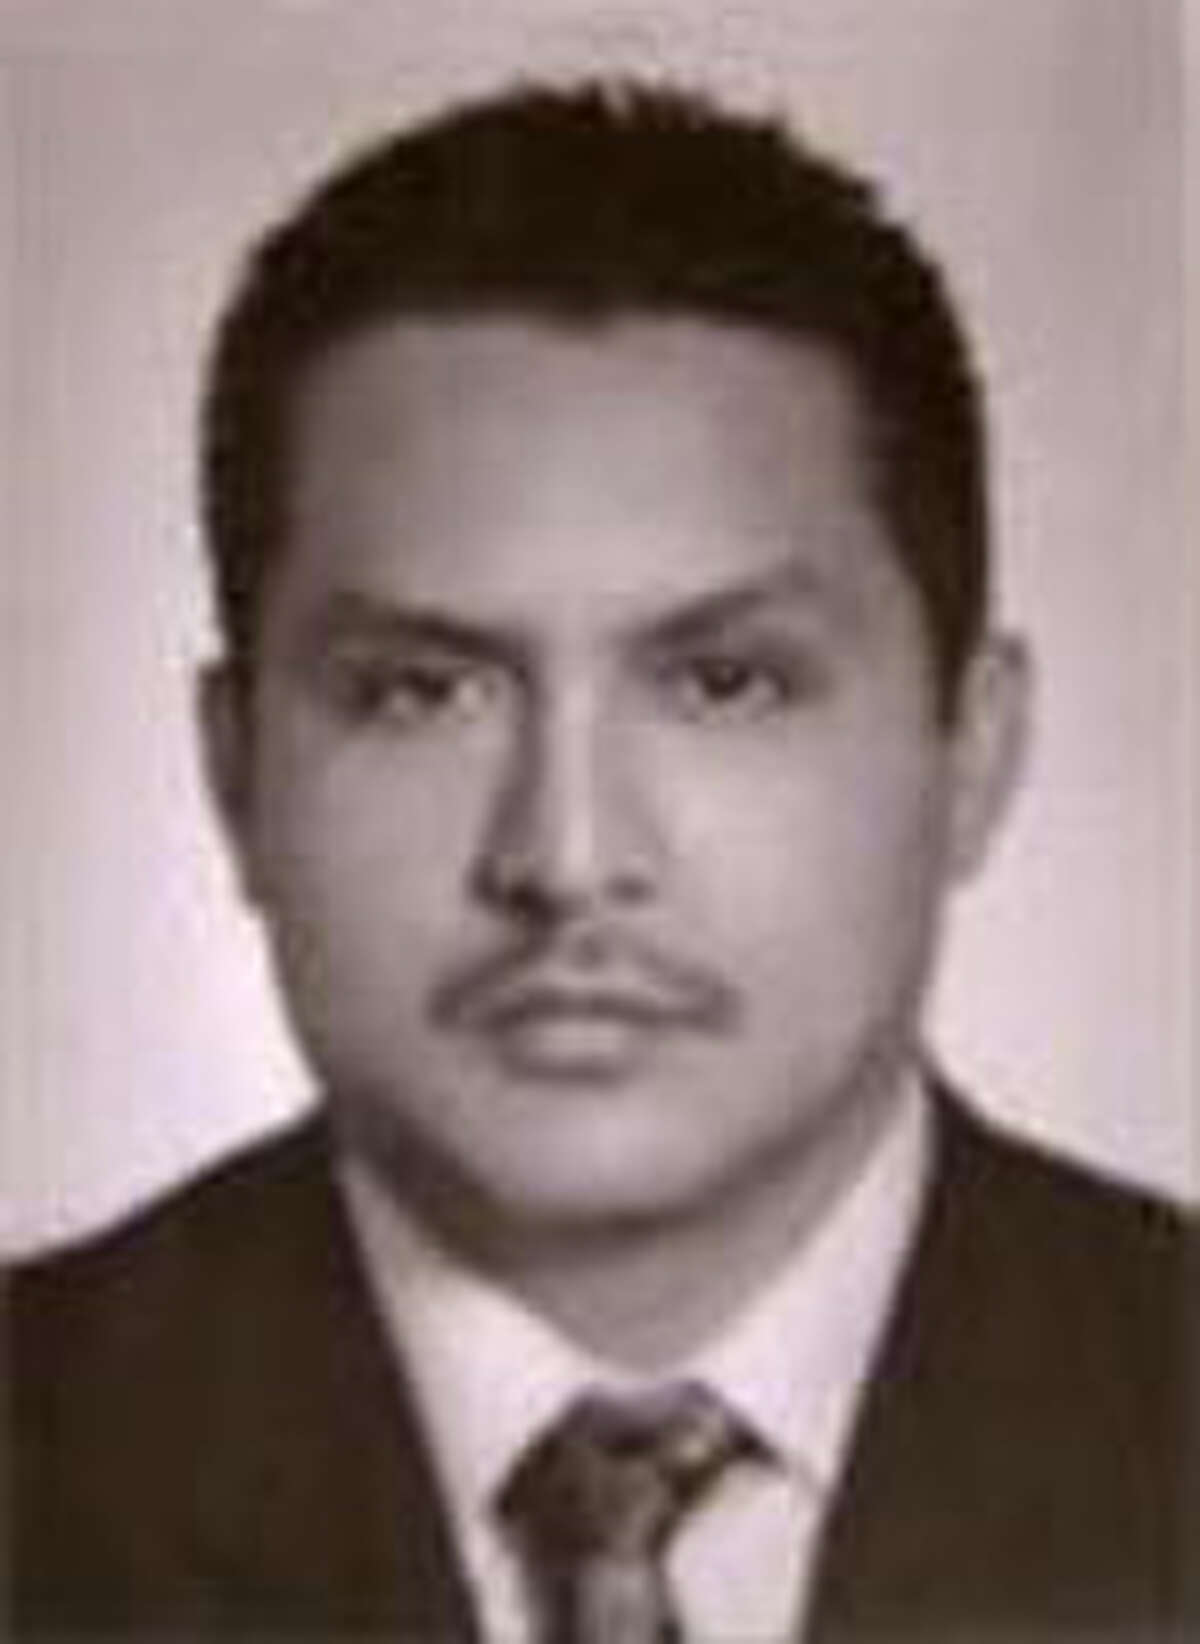 Miguel Angel Trevino-Morales (AKA 40, Cuarenta, L-40, David Estrada-Corado and Comandante Forty)